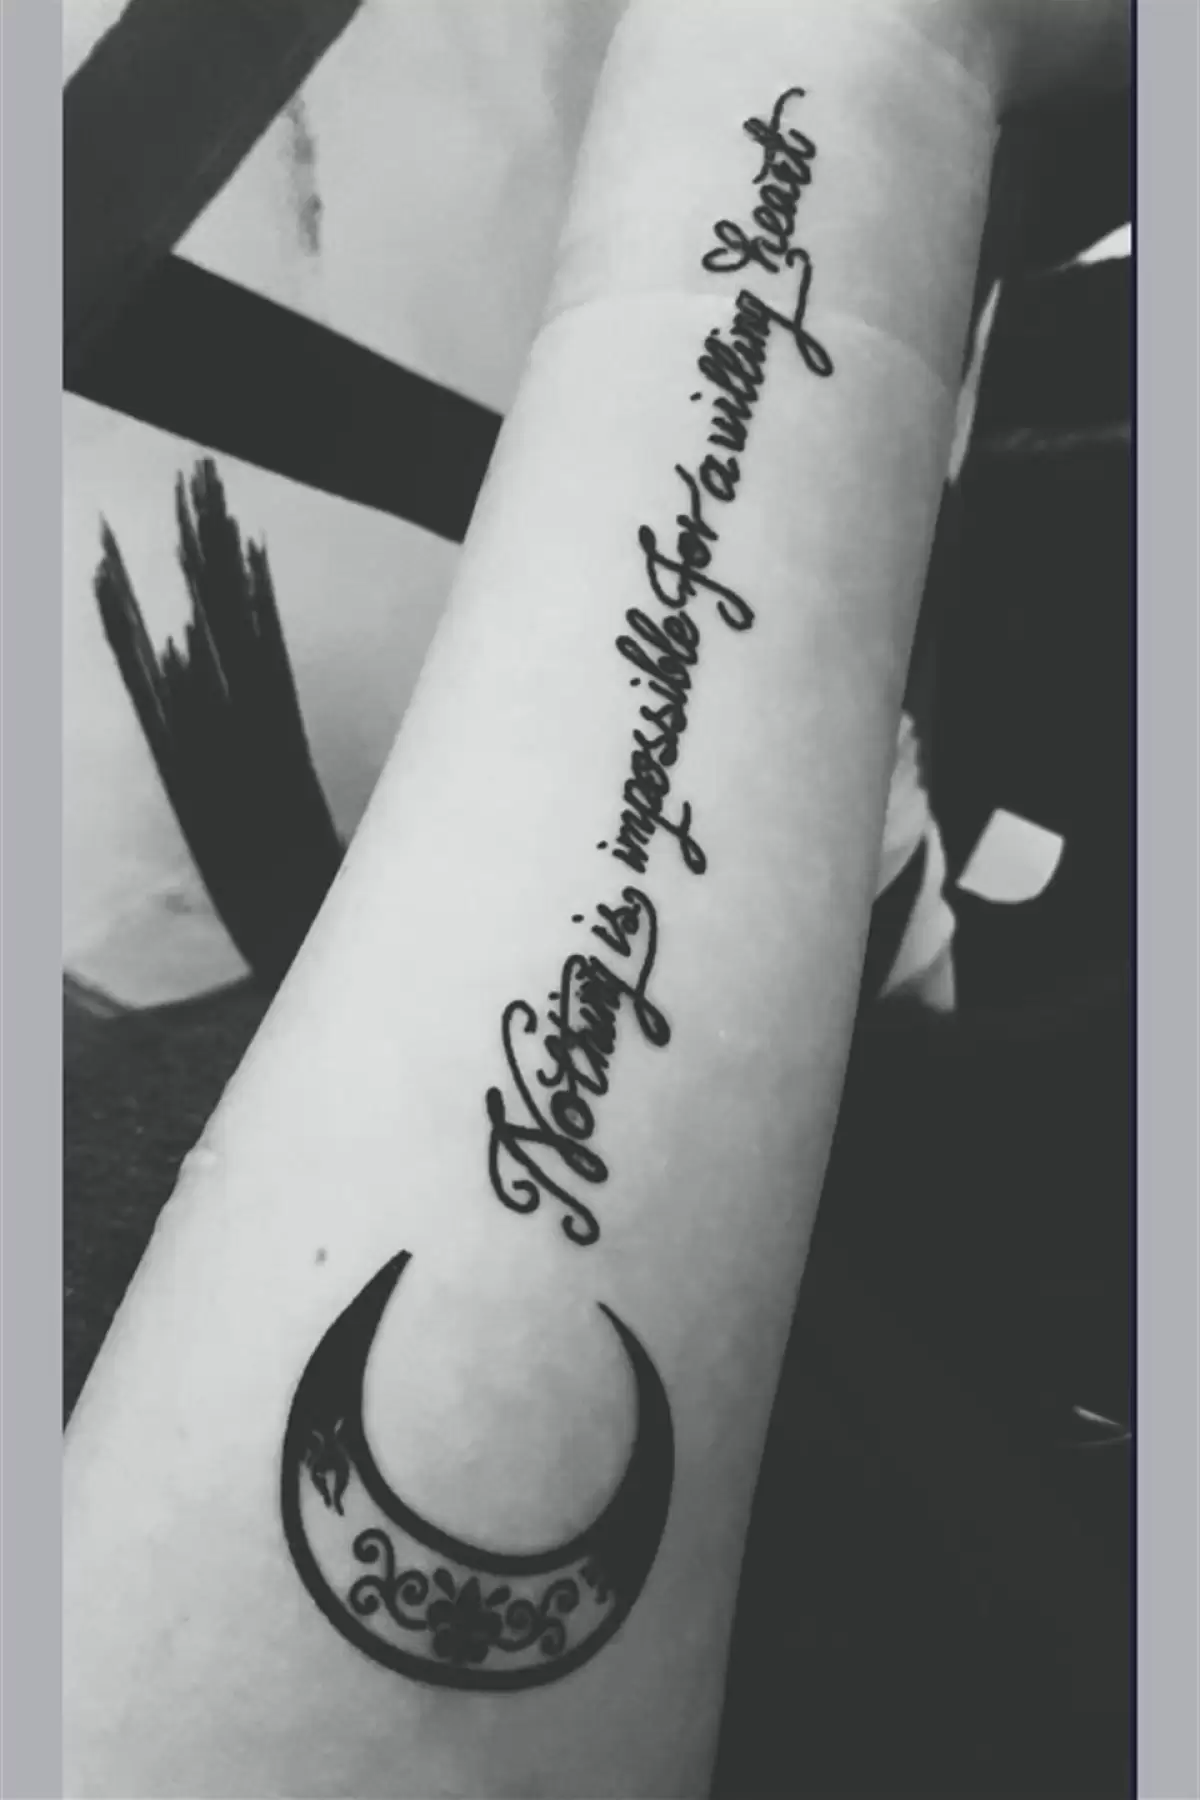 Geçici Hilal Yazılı Dövme Tattoo